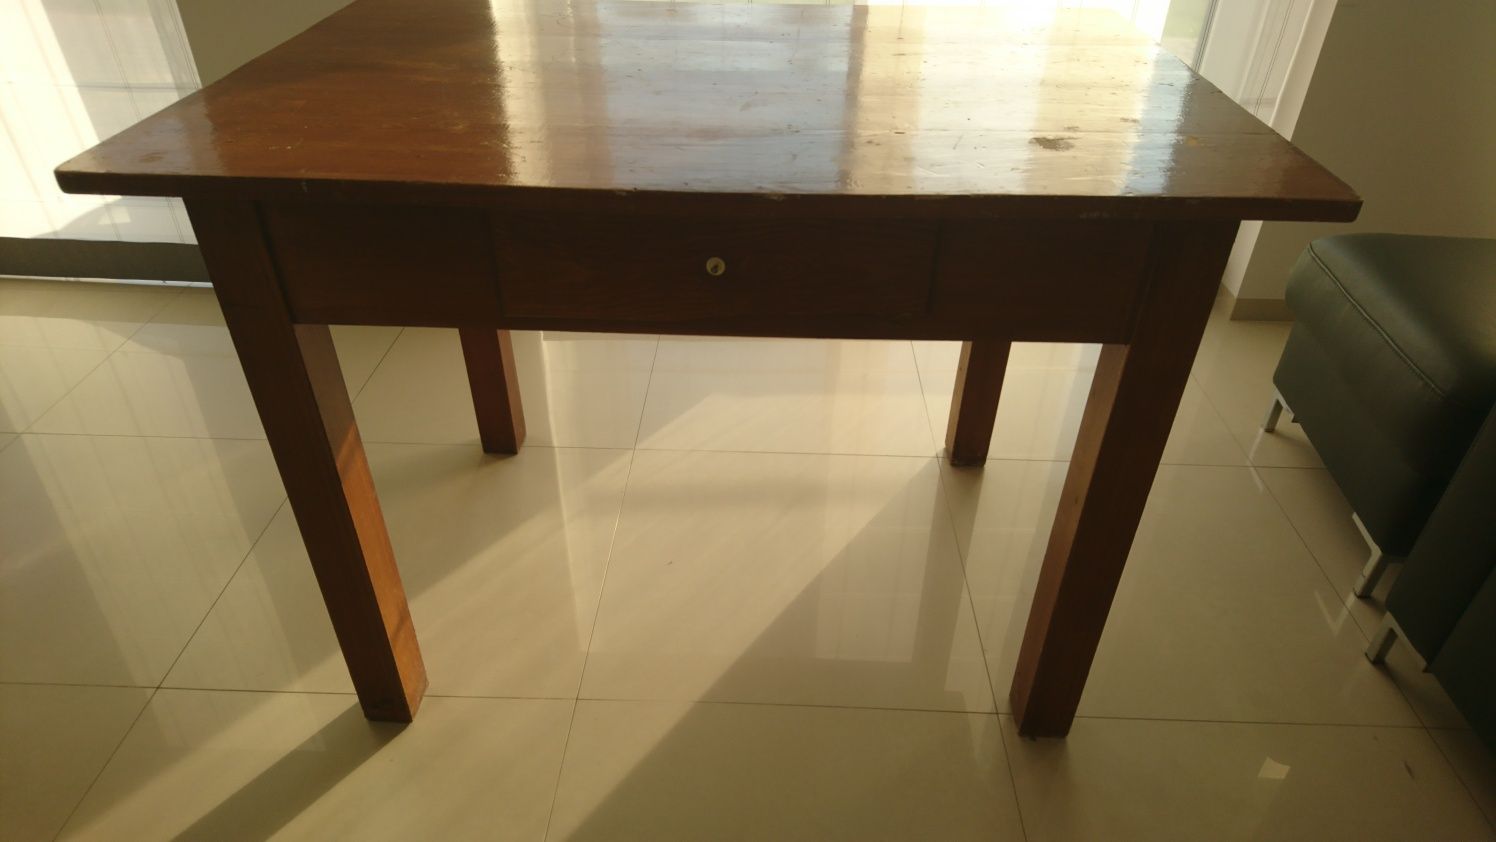 Stary stół drewniany 114 cmx77 cm